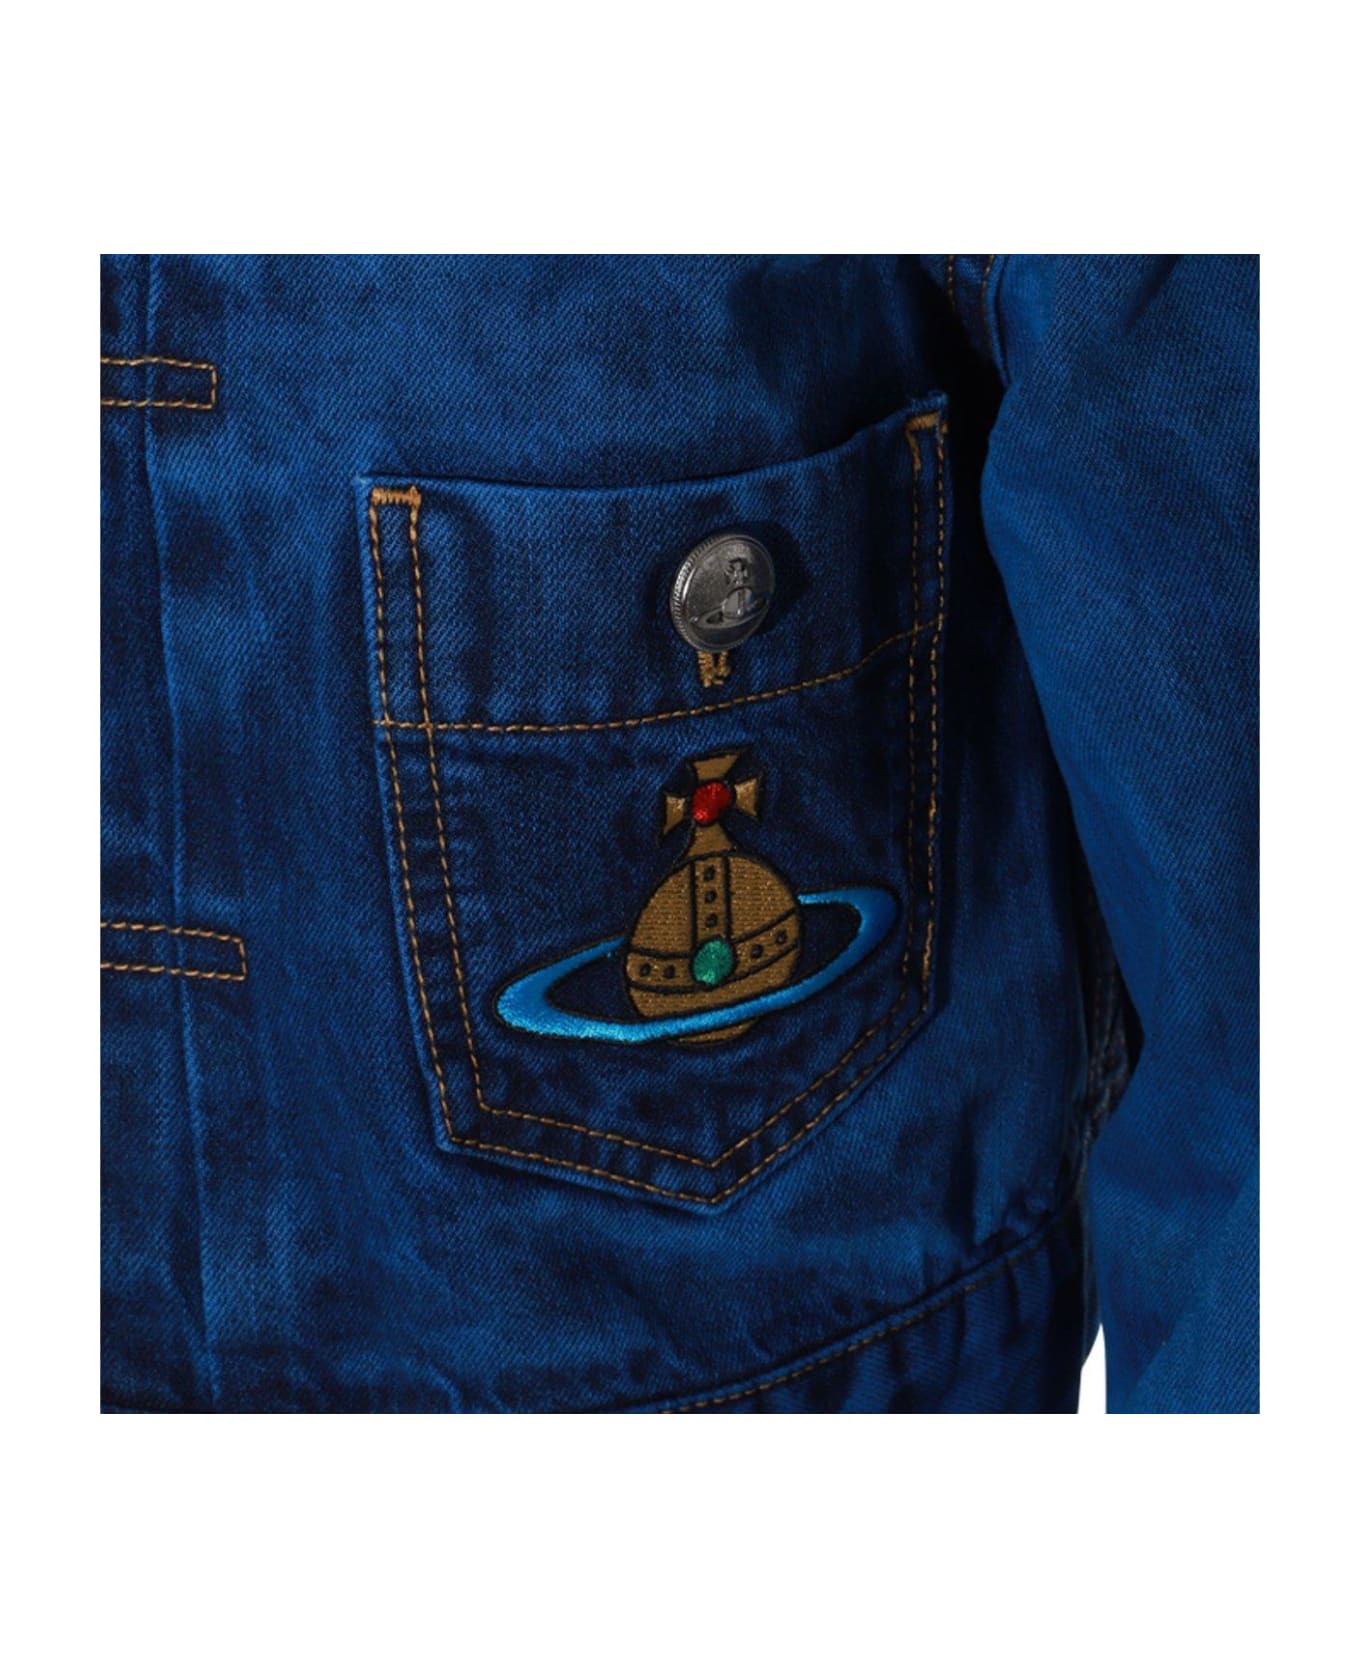 Vivienne Westwood Cropped Denim Jacket - Blu